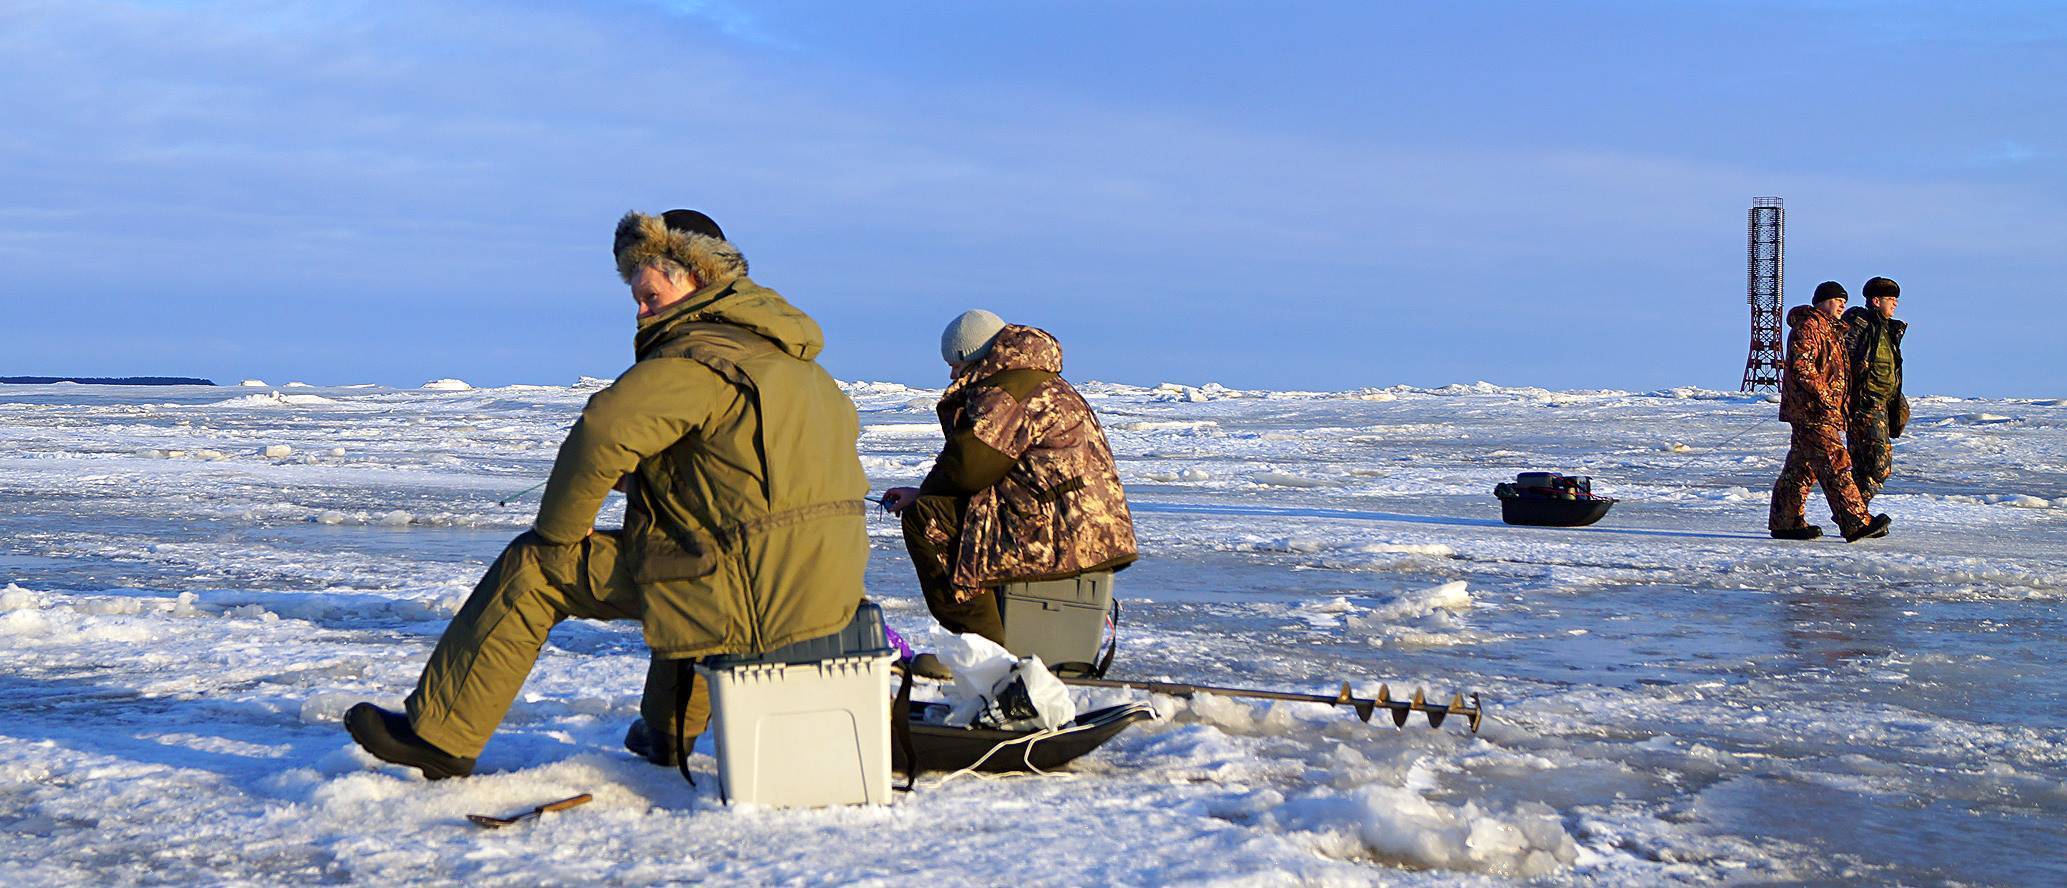 Рыбалка на севере: в какой заполярный регион поехать на отдых, выбор подходящего места для ловли рыбы